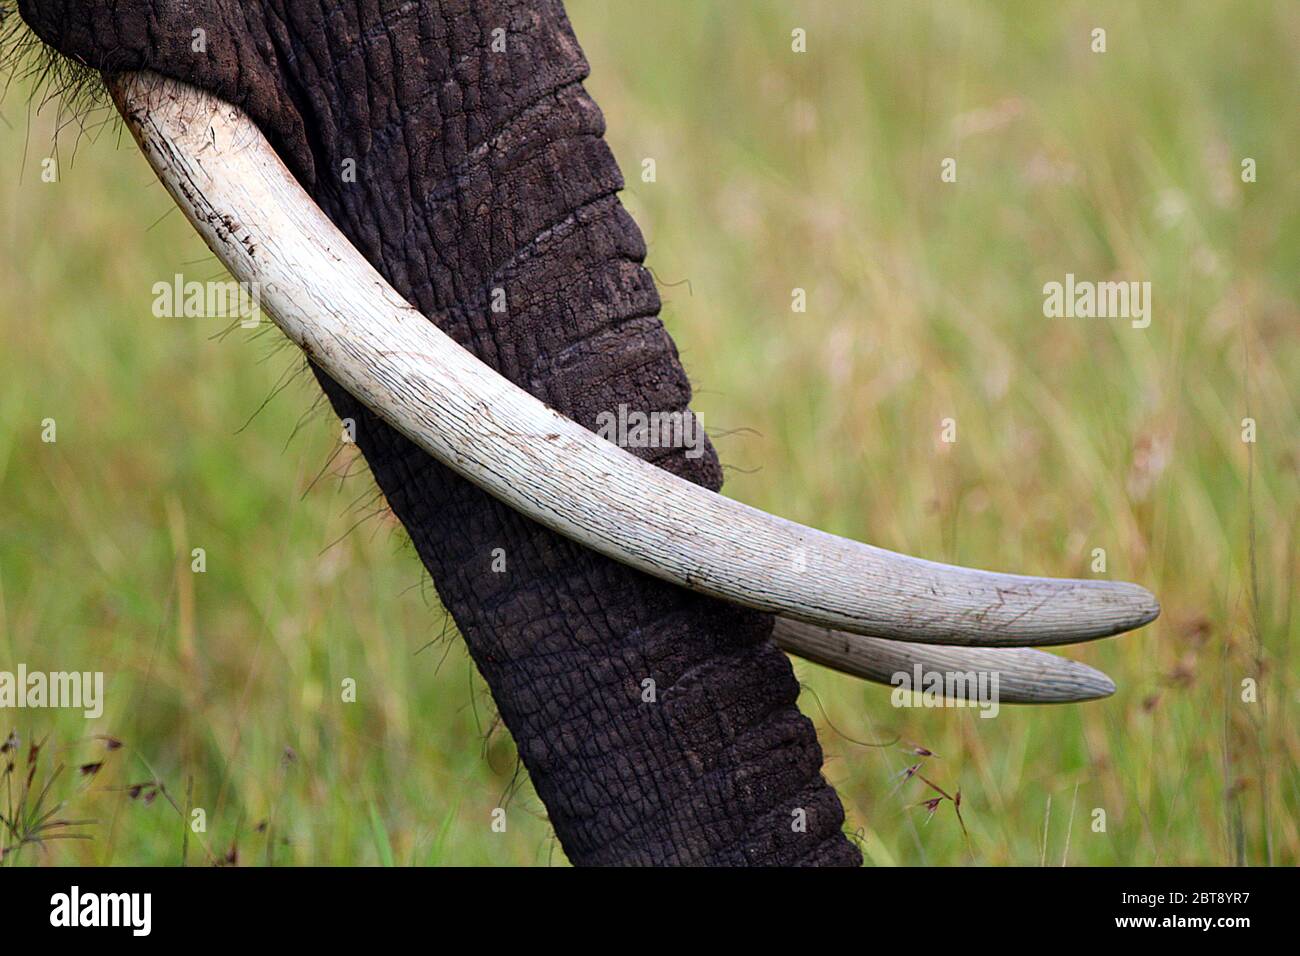 Gros plan du tronc de l'éléphant avec de longues défenses à fond jaune-vert Banque D'Images